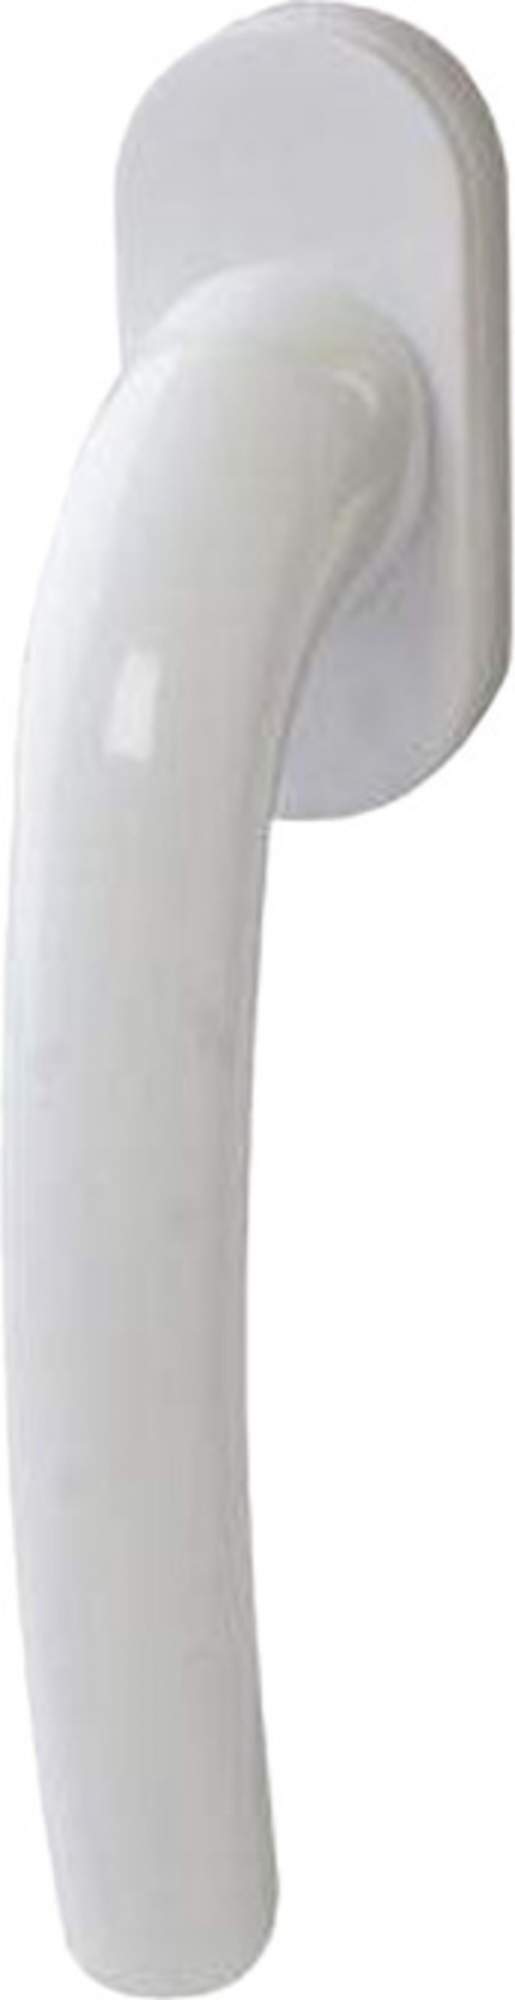 Ручка для окон алюминиевая HOPA белая штифт 35 мм 11976/12704 купить в интернет-магазине, цены на Мегамаркет